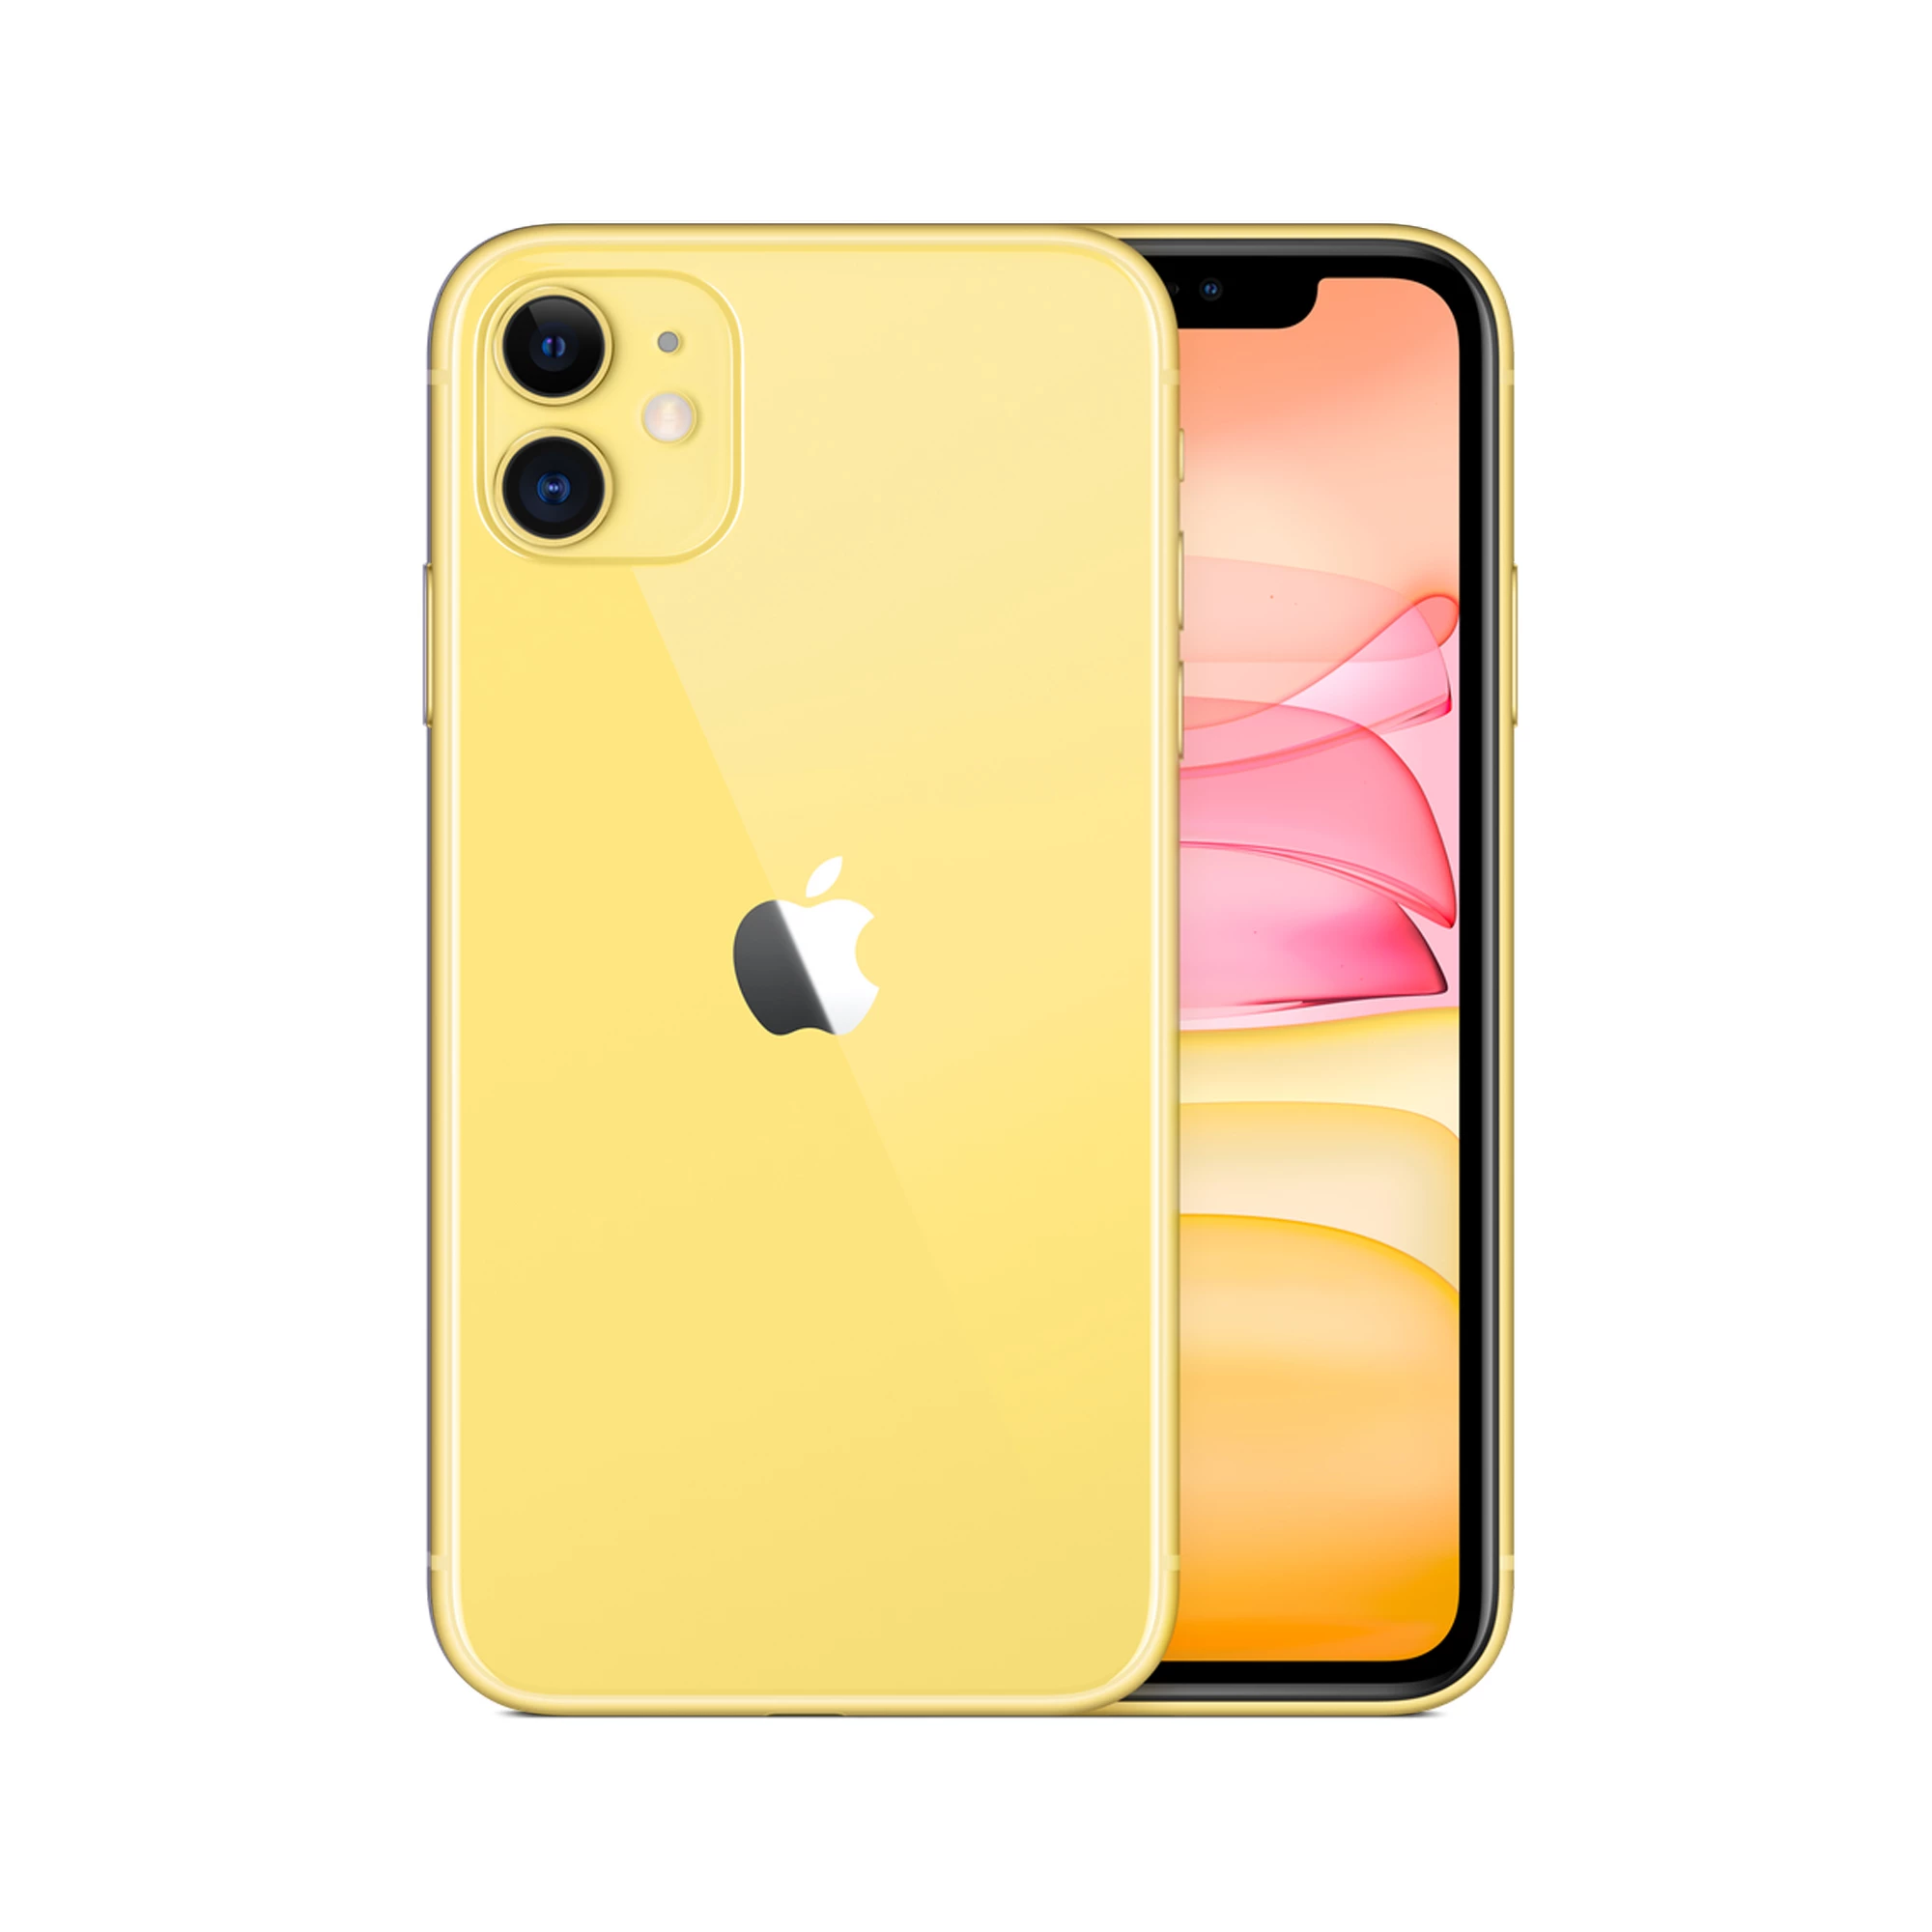 Apple iPhone 11 64GB Yellow (MWLA2) Full Box